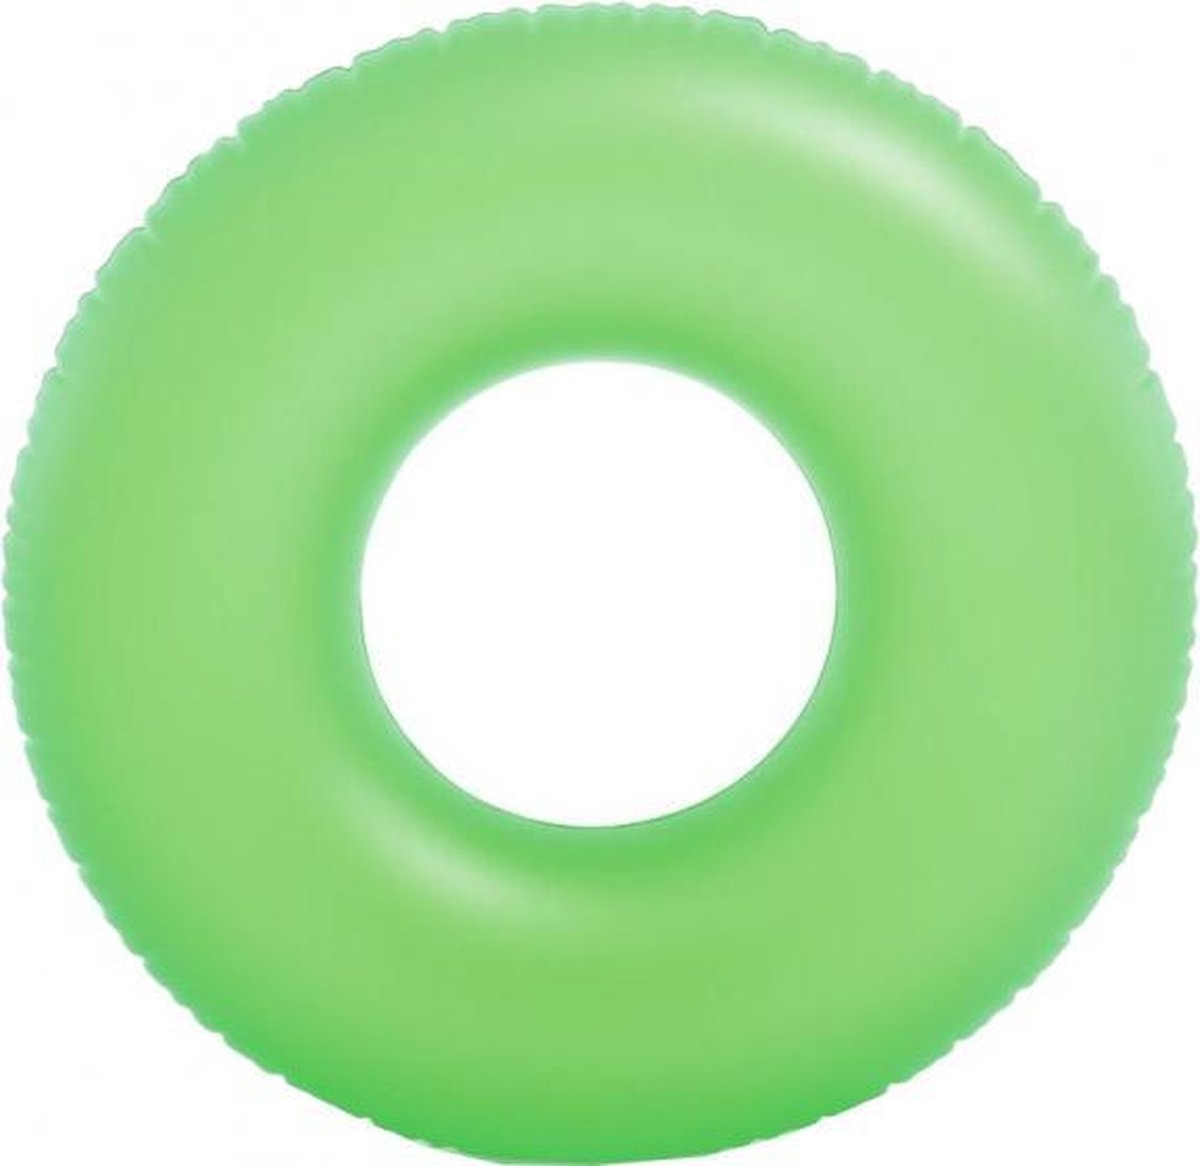 zwemband groen 91 cm